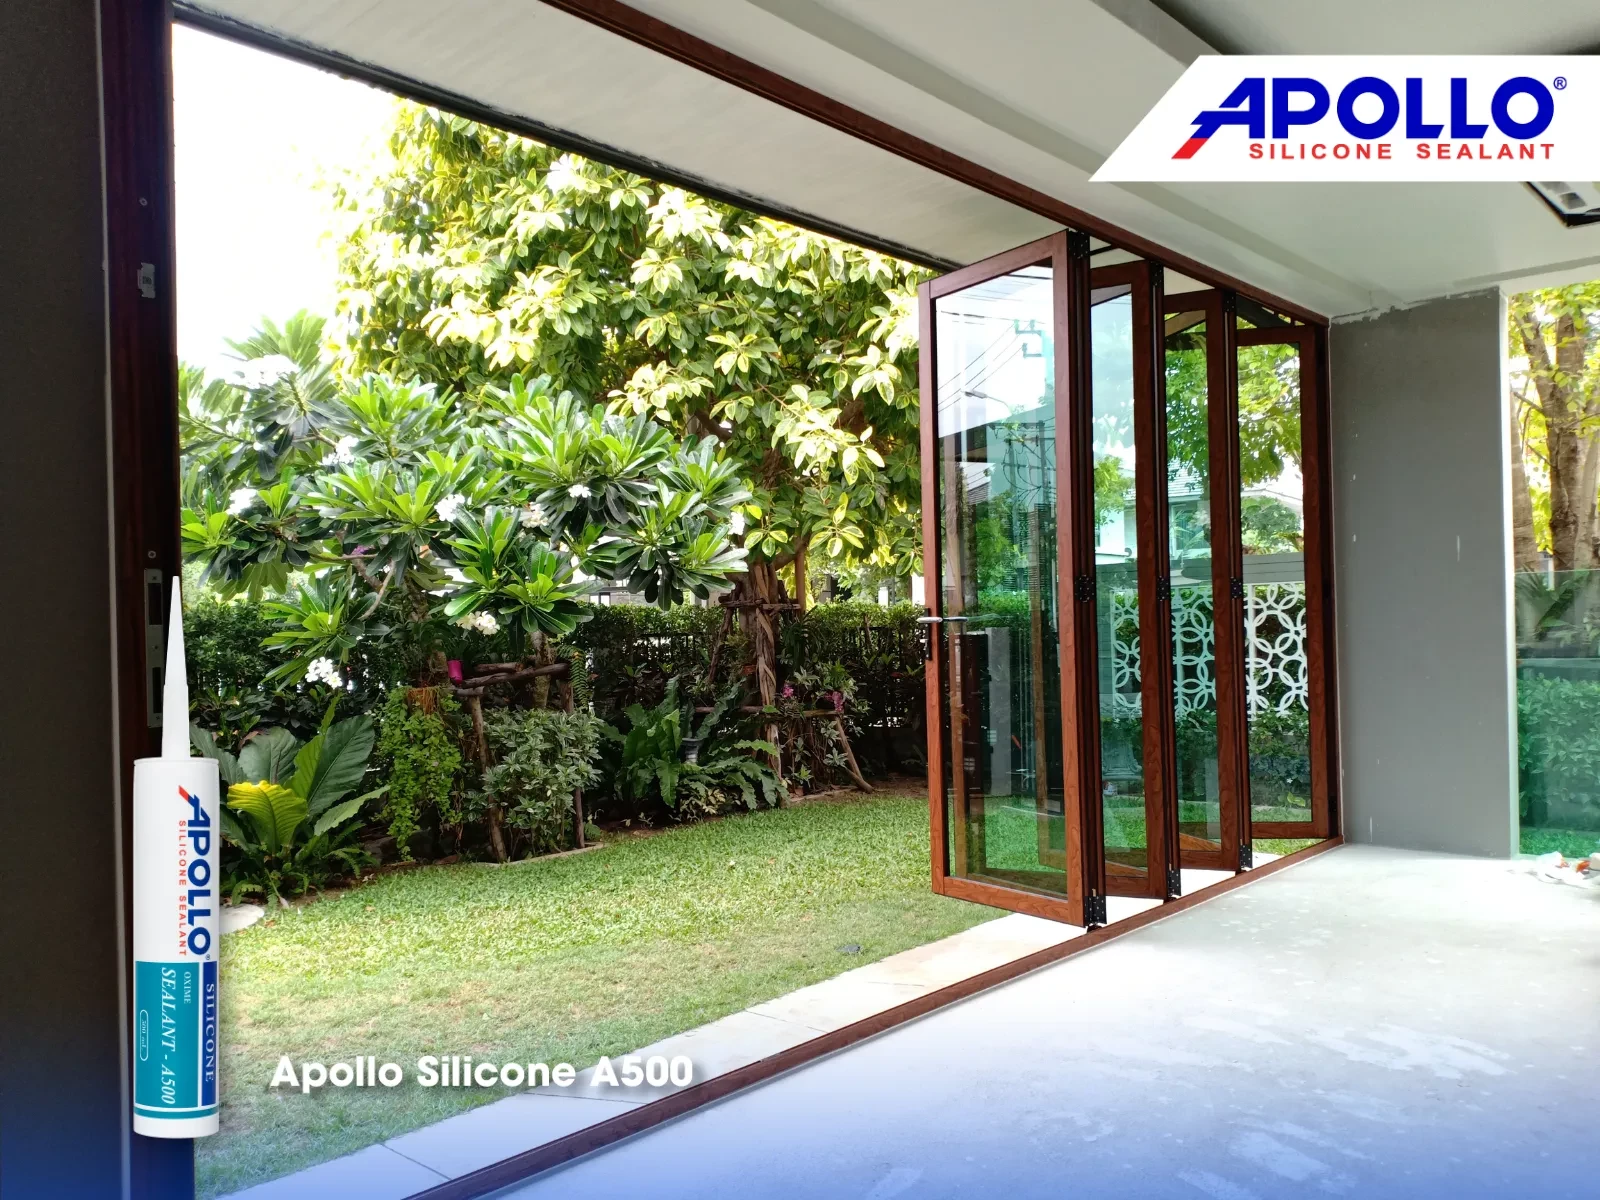 Sản phẩm chất trám Apollo Silicone A500 cũng có thể dùng để trám mối nối cửa sổ ngoài trời để chống thấm nước